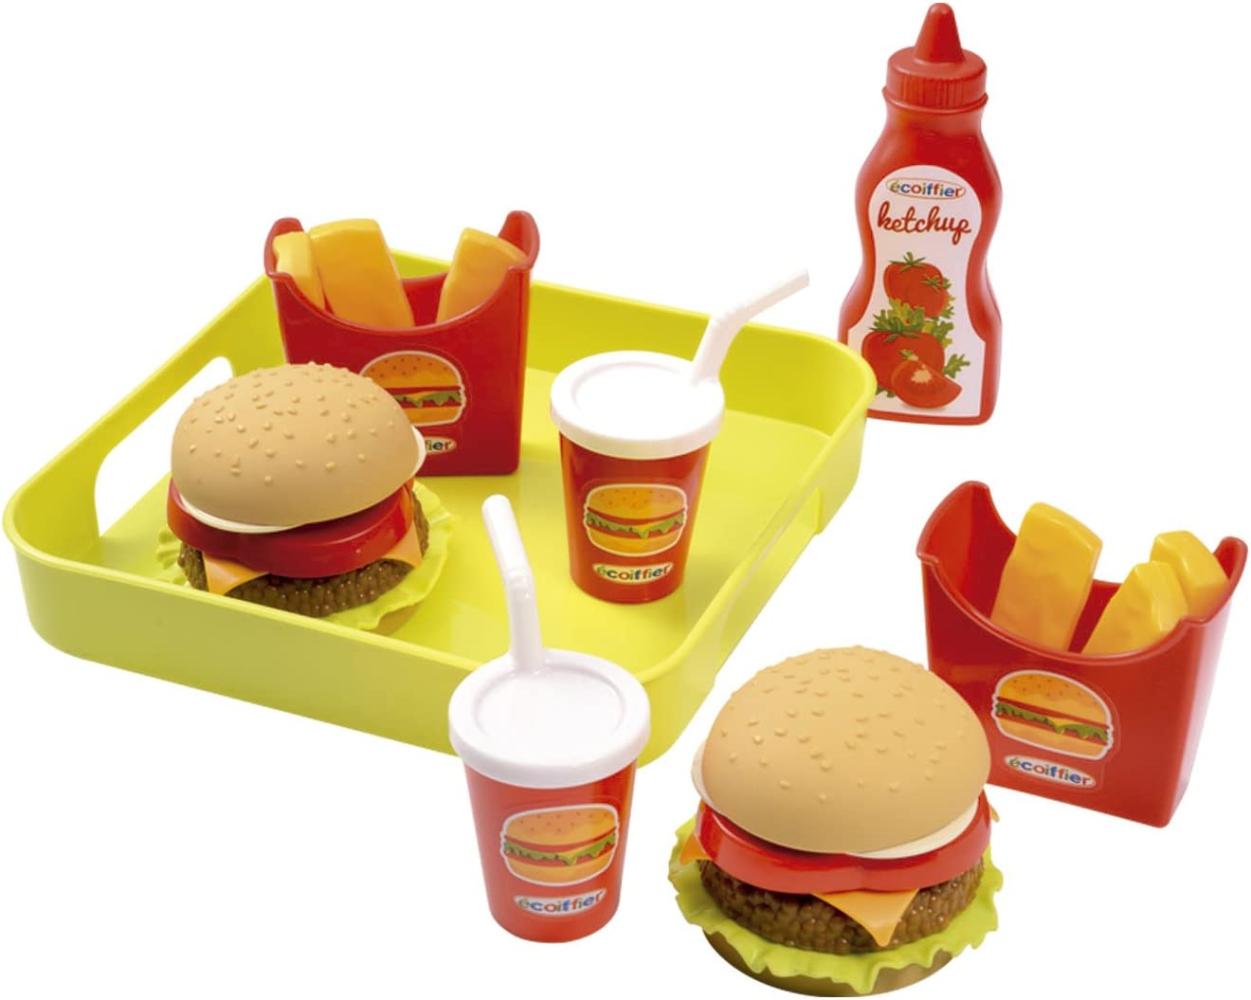 Ecoiffier 957 - Hamburger Set mit Tablett Bild 1